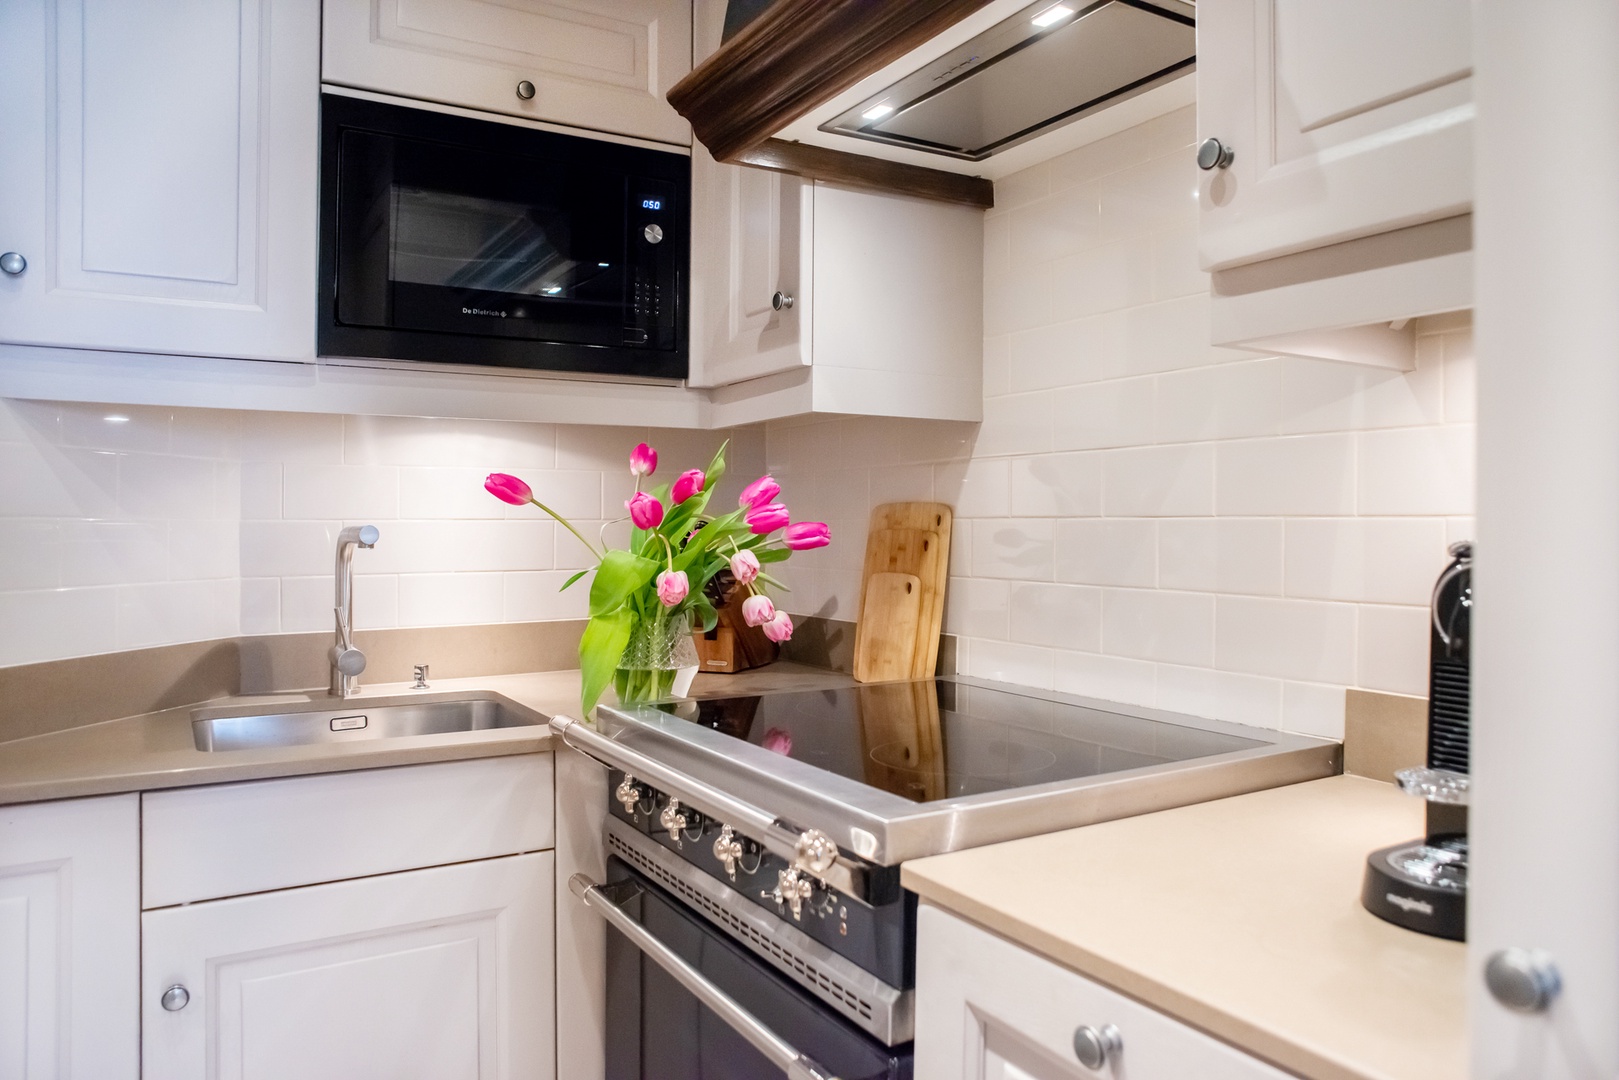 Enjoy preparing meals in this modern kitchen with a premium Lacanche range.